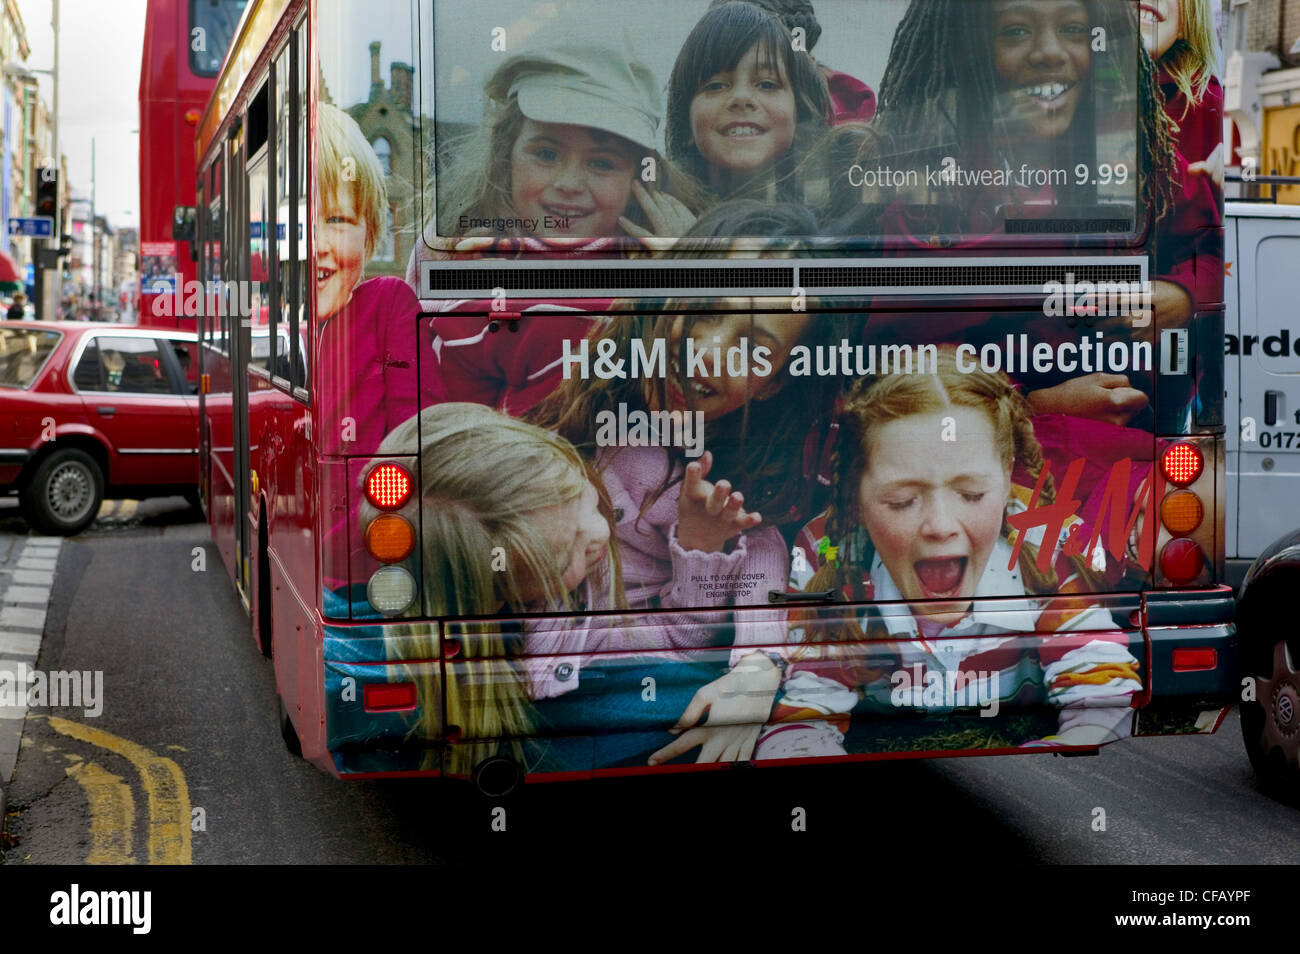 Kilburn, Londres. Autobús decorado con anuncio de H&M el vestido. Foto de stock